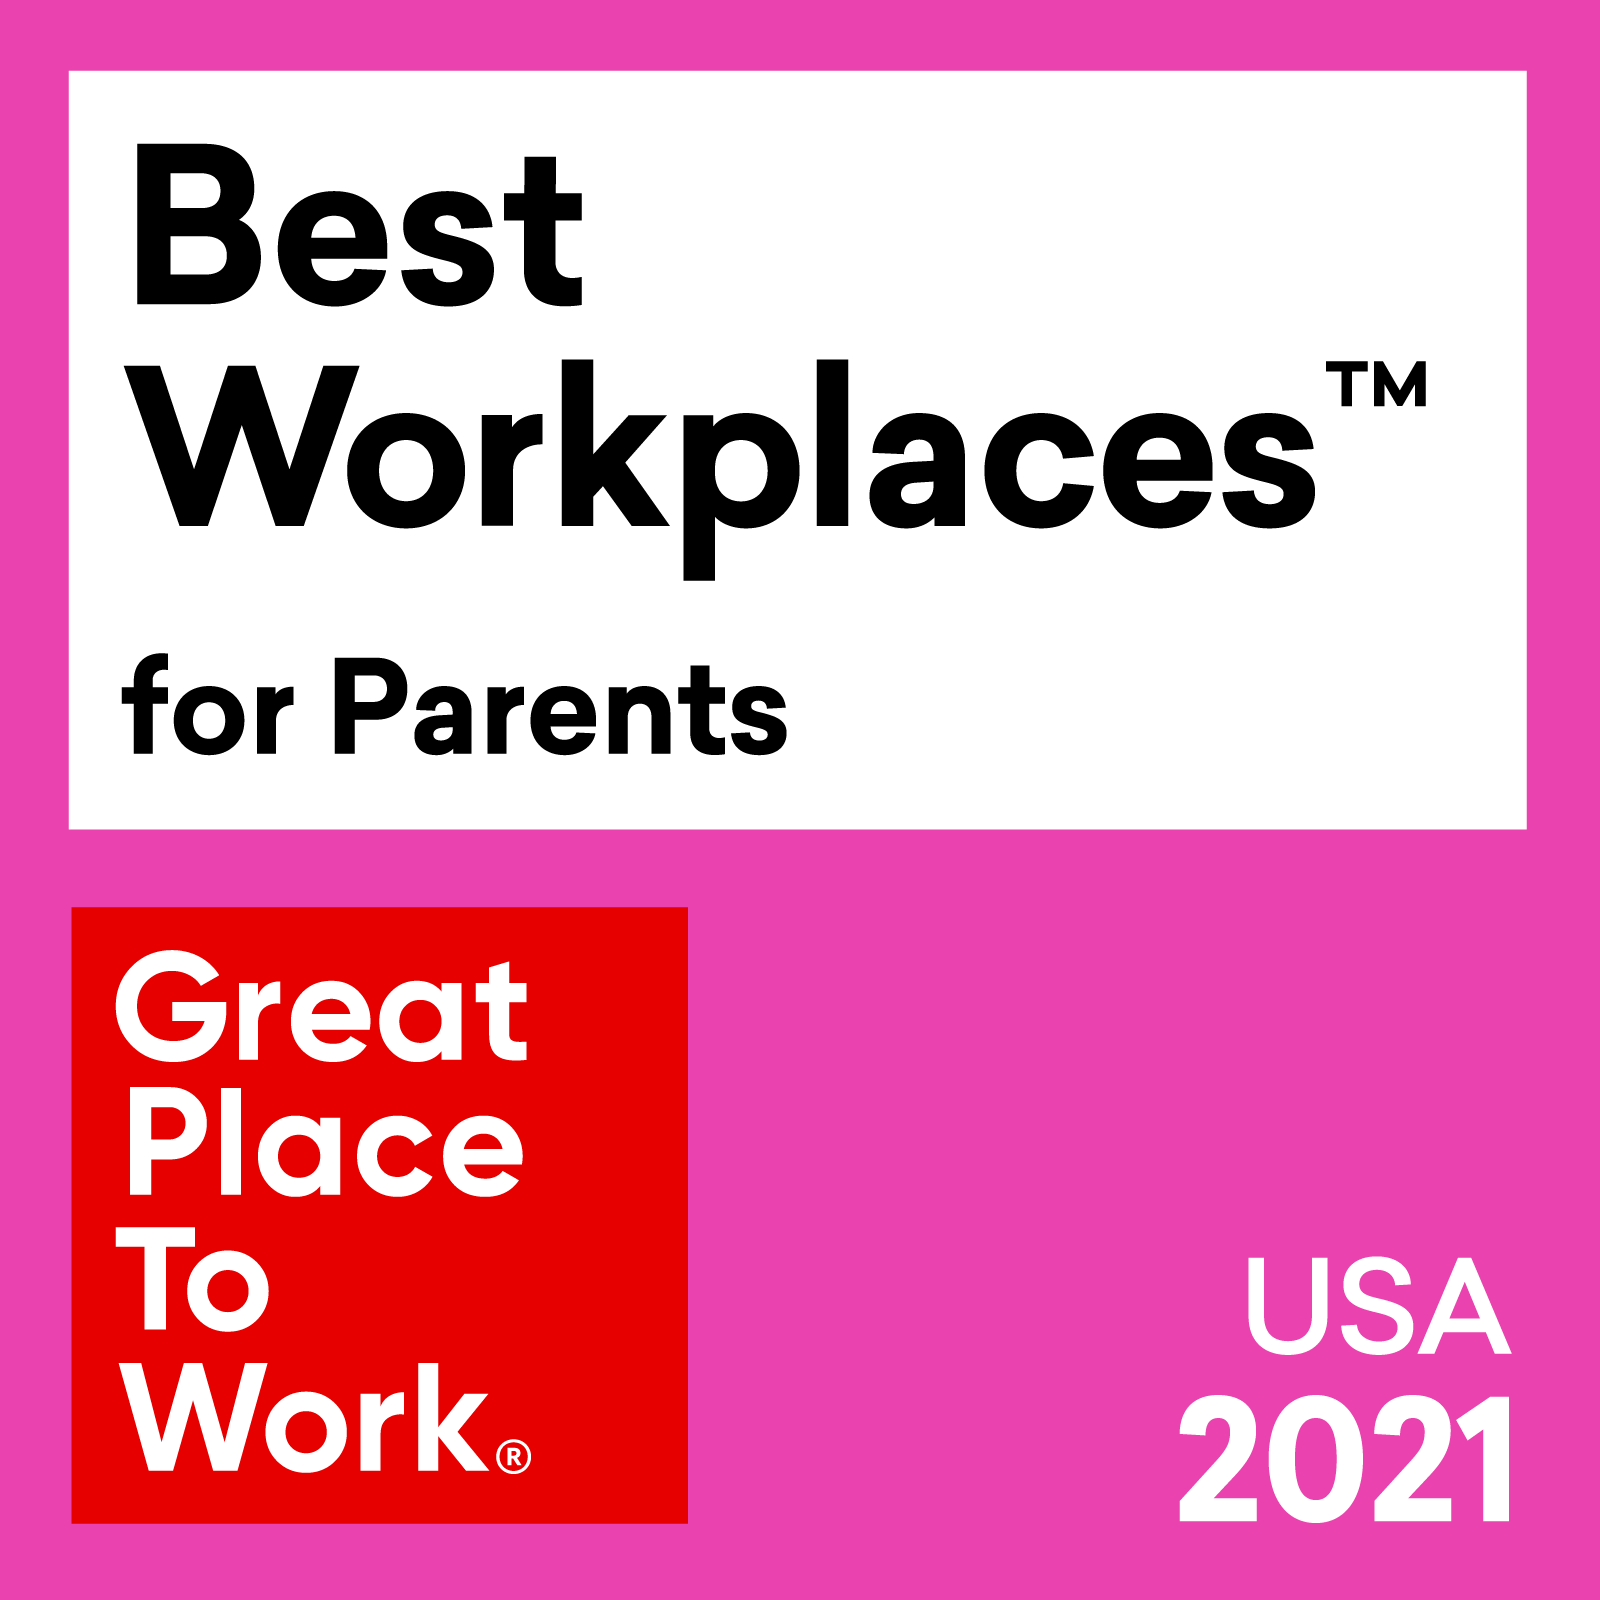 Miglior posto di lavoro™️ per genitori - Premio 2021 per gli Stati Uniti da Great Place To Work